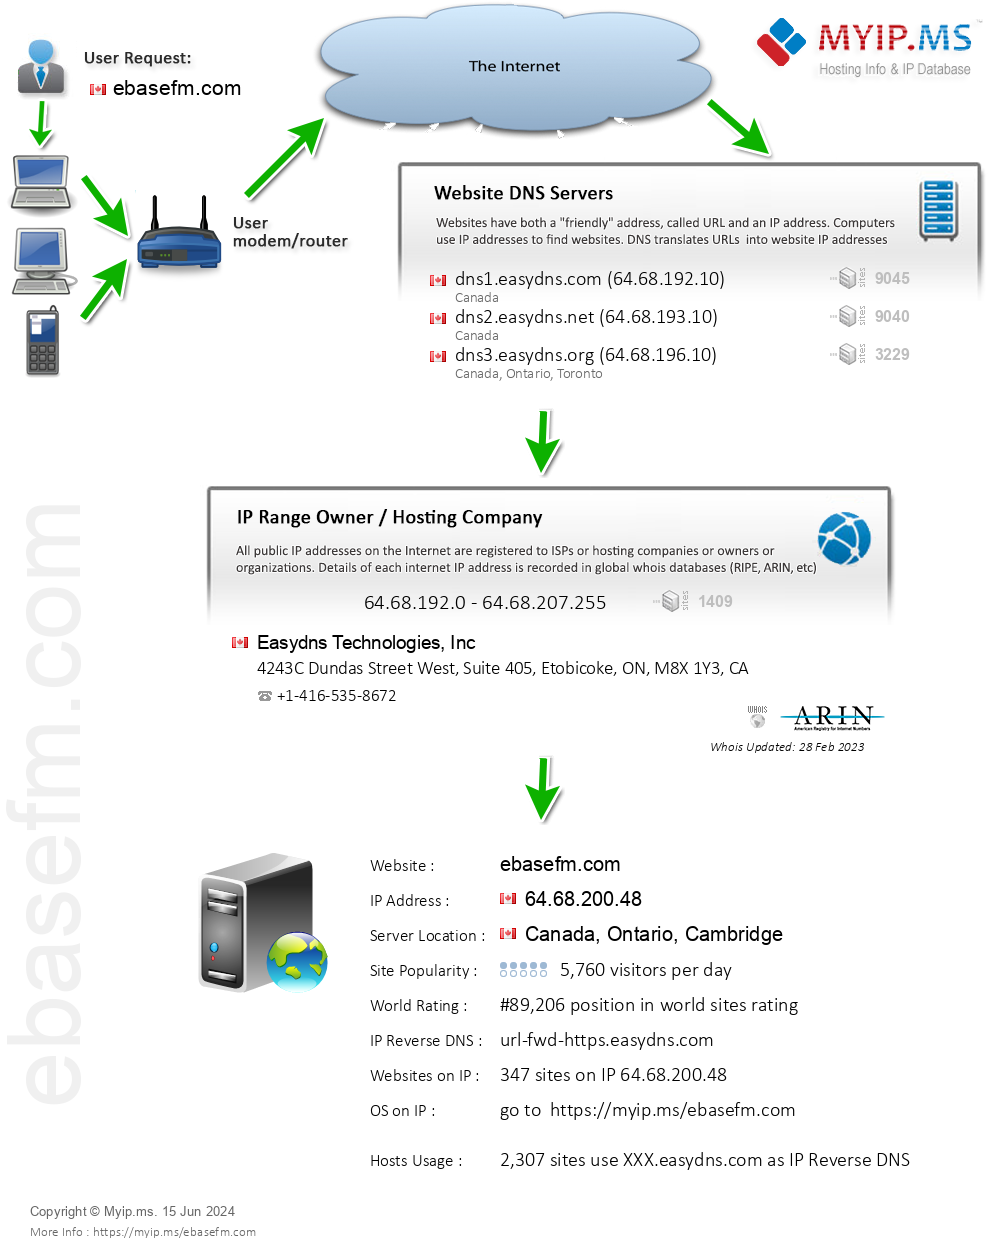 Ebasefm.com - Website Hosting Visual IP Diagram